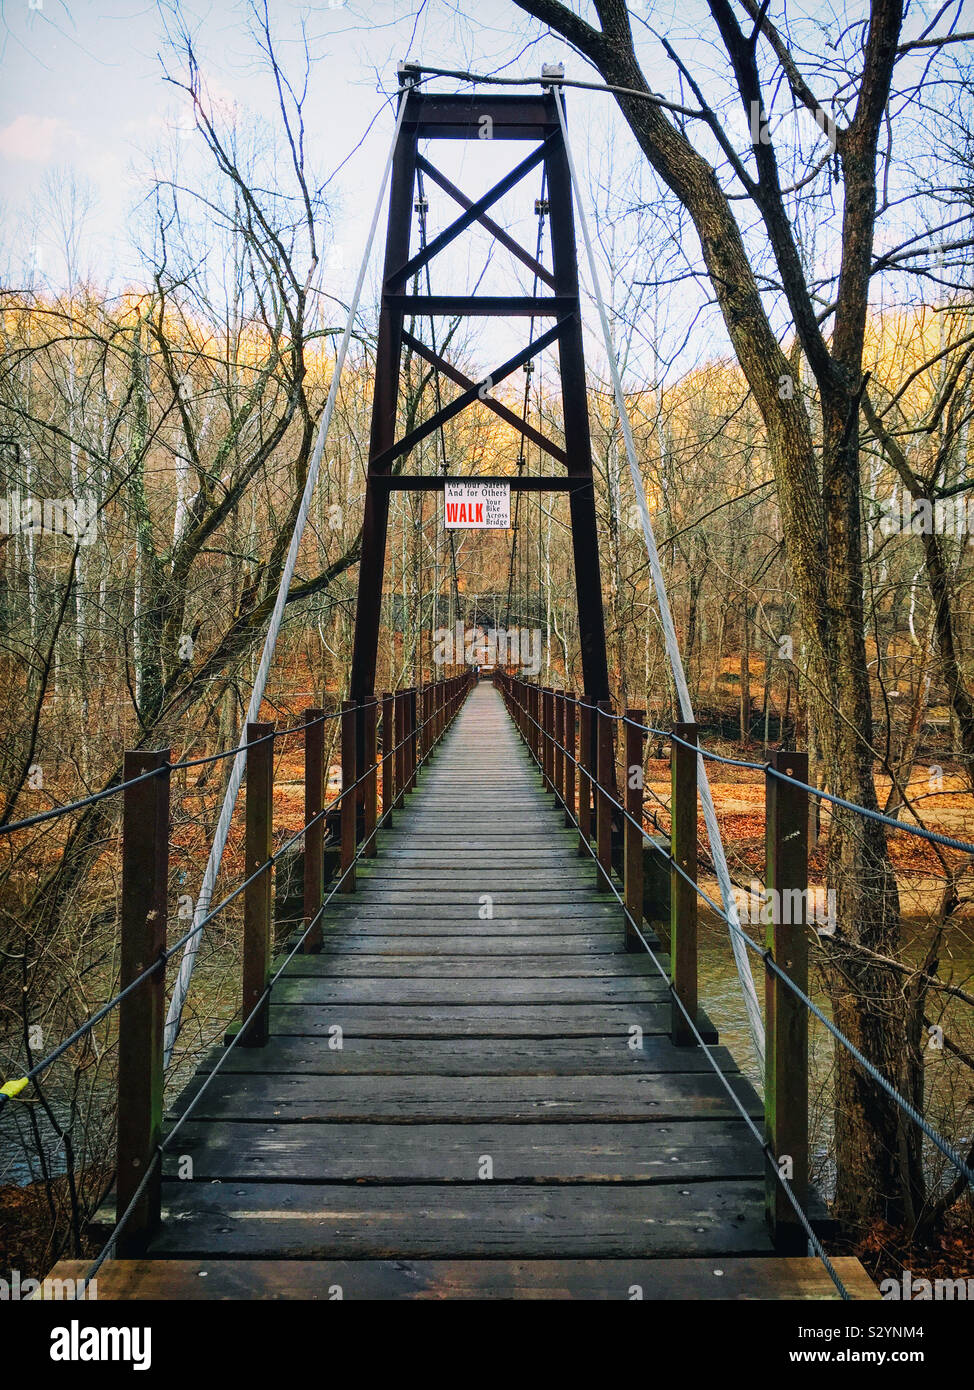 Die patapsco Swinging Bridge ist in Patapsco Valley State Park in Maryland, USA. Es ist eine Hängebrücke, bestehend aus einem holzdeck von großen Kabel unterstützt. Stockfoto